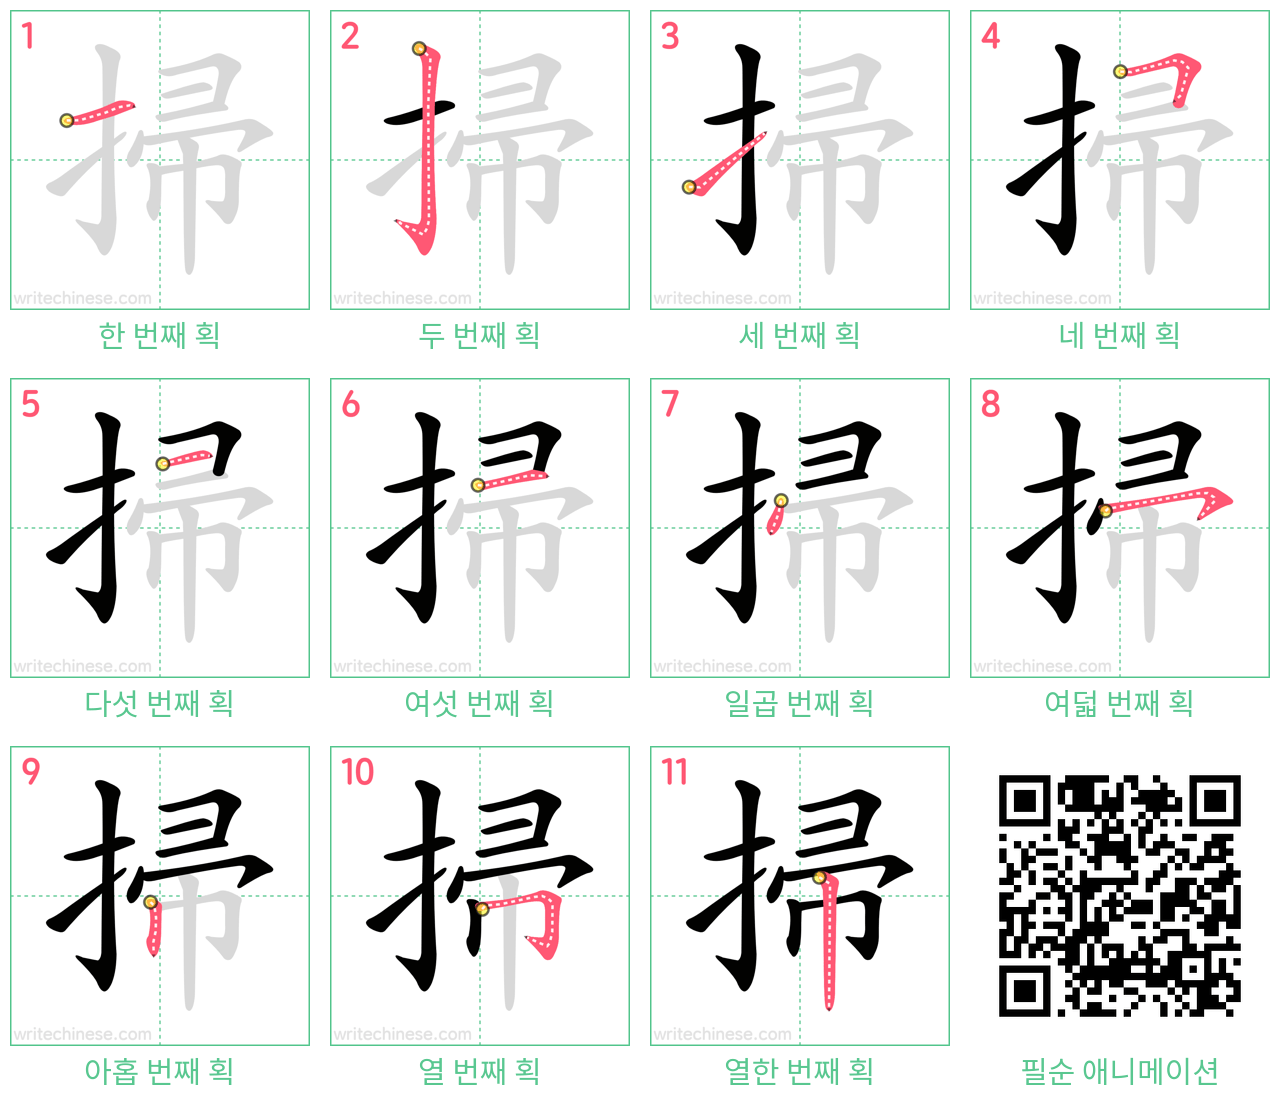 掃 step-by-step stroke order diagrams